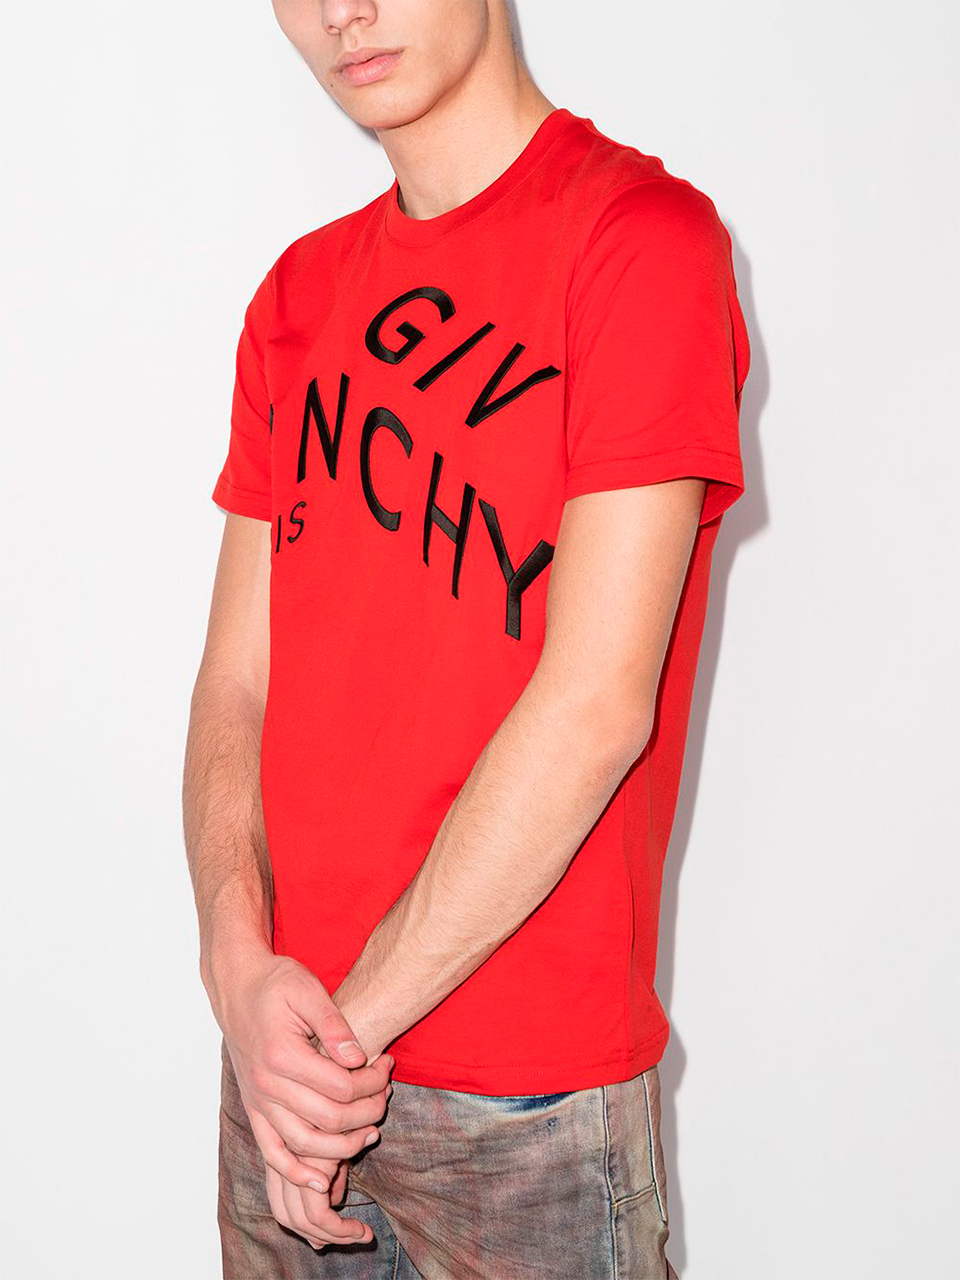 Imagem de: Camiseta Givenchy Vermelha com Bordado Abstrato